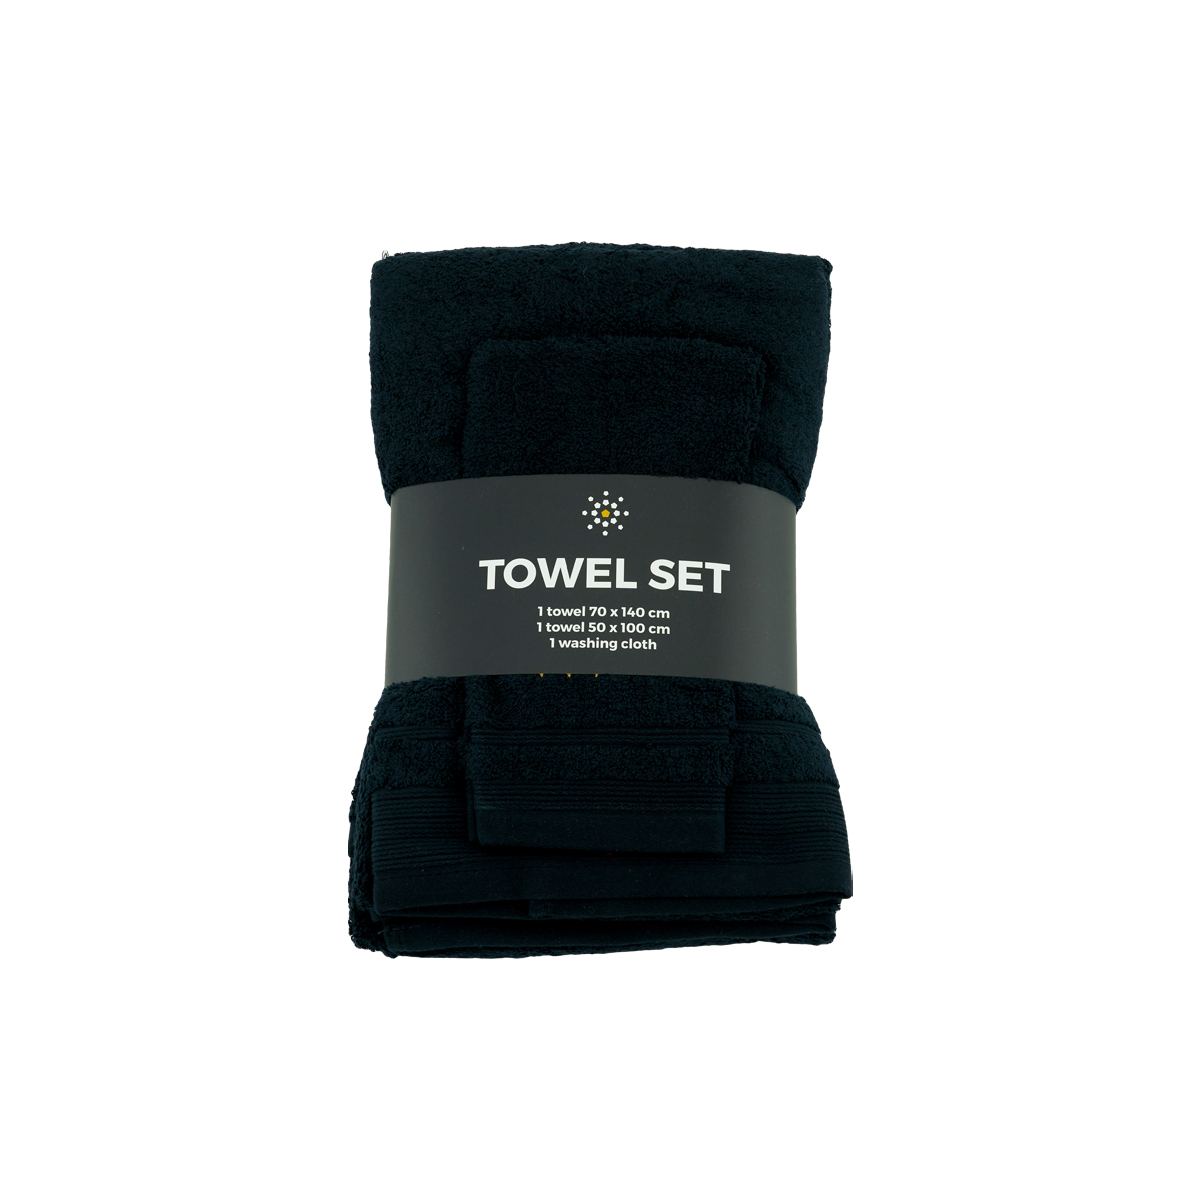 Towel Set - Black is-hover